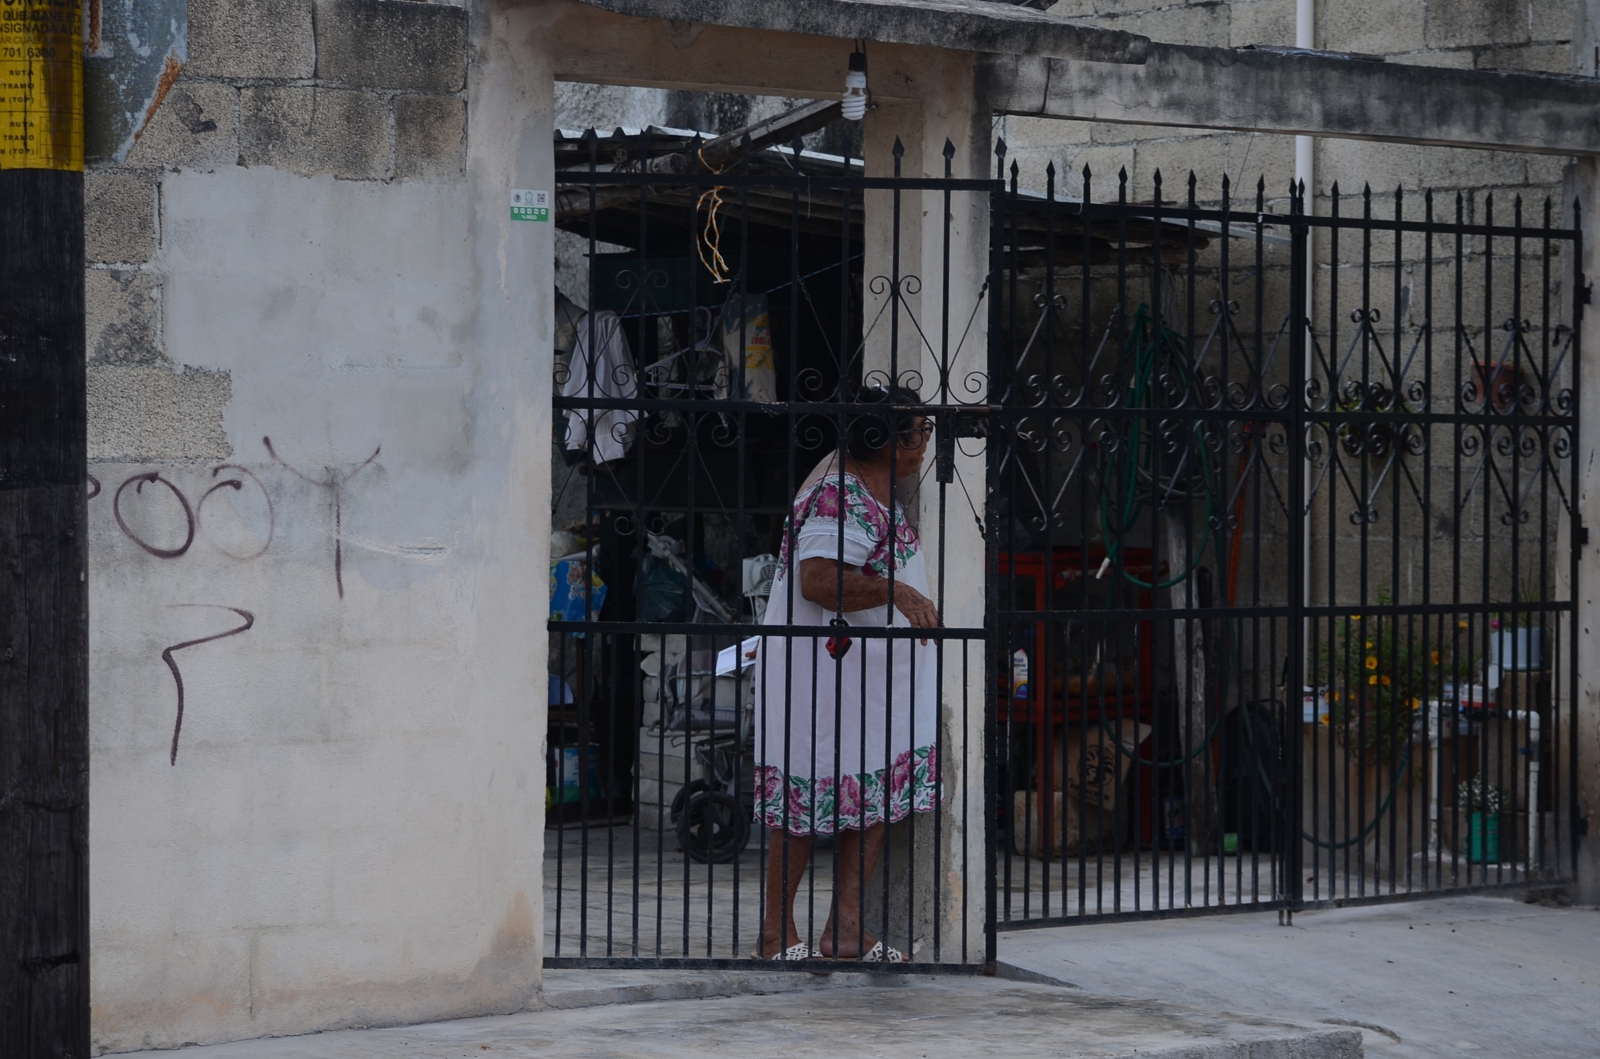 Ciudadanos de Cancún, temerosos de la delincuencia; refuerzan seguridad en viviendas